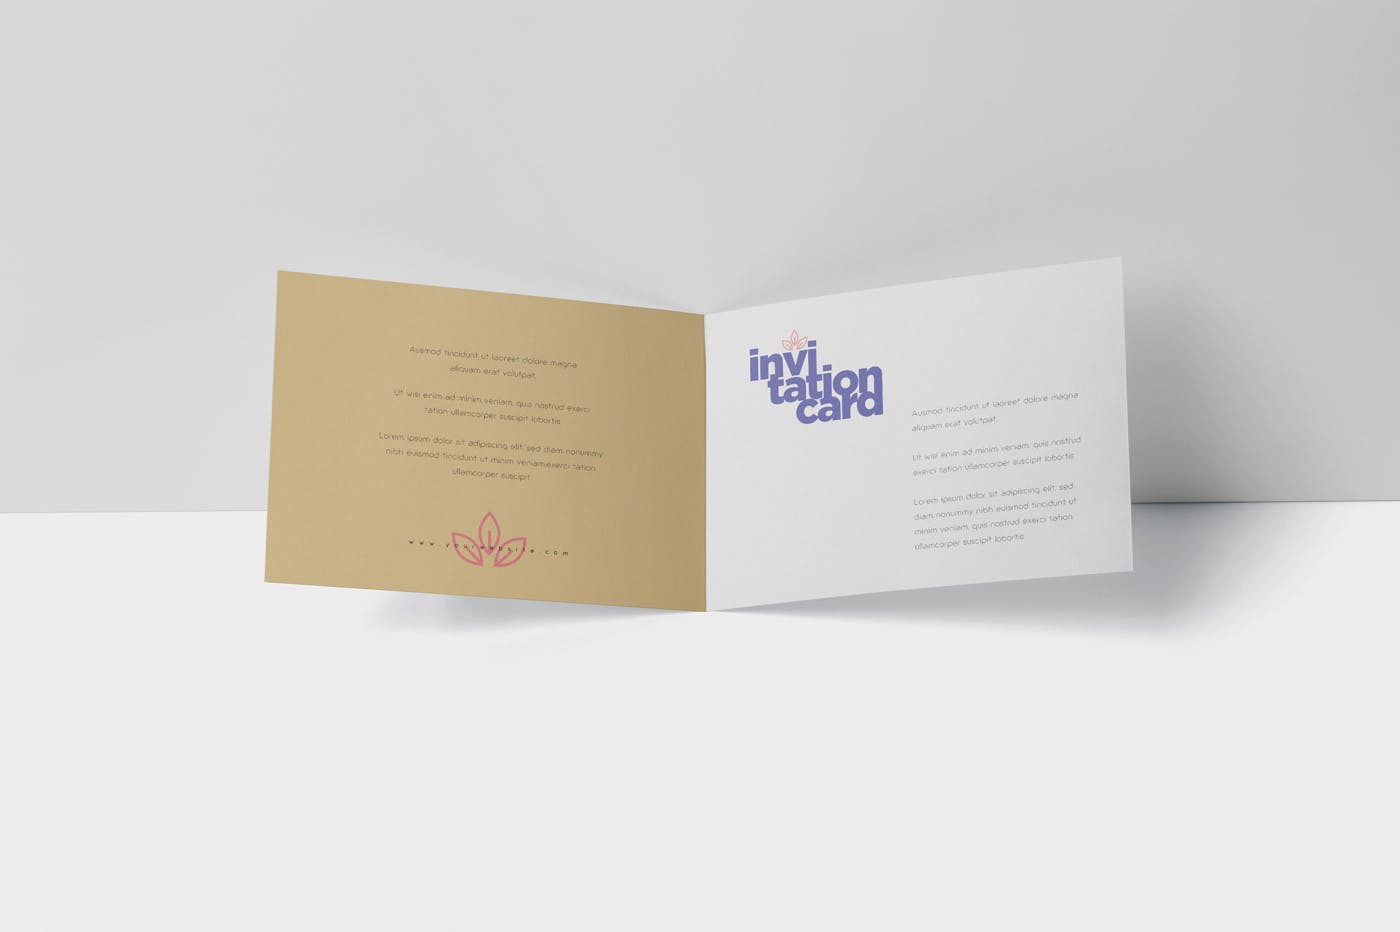 创意邀请卡/邀请函设计图样机蚂蚁素材精选 Invitation Card Mock-Up Set插图(2)